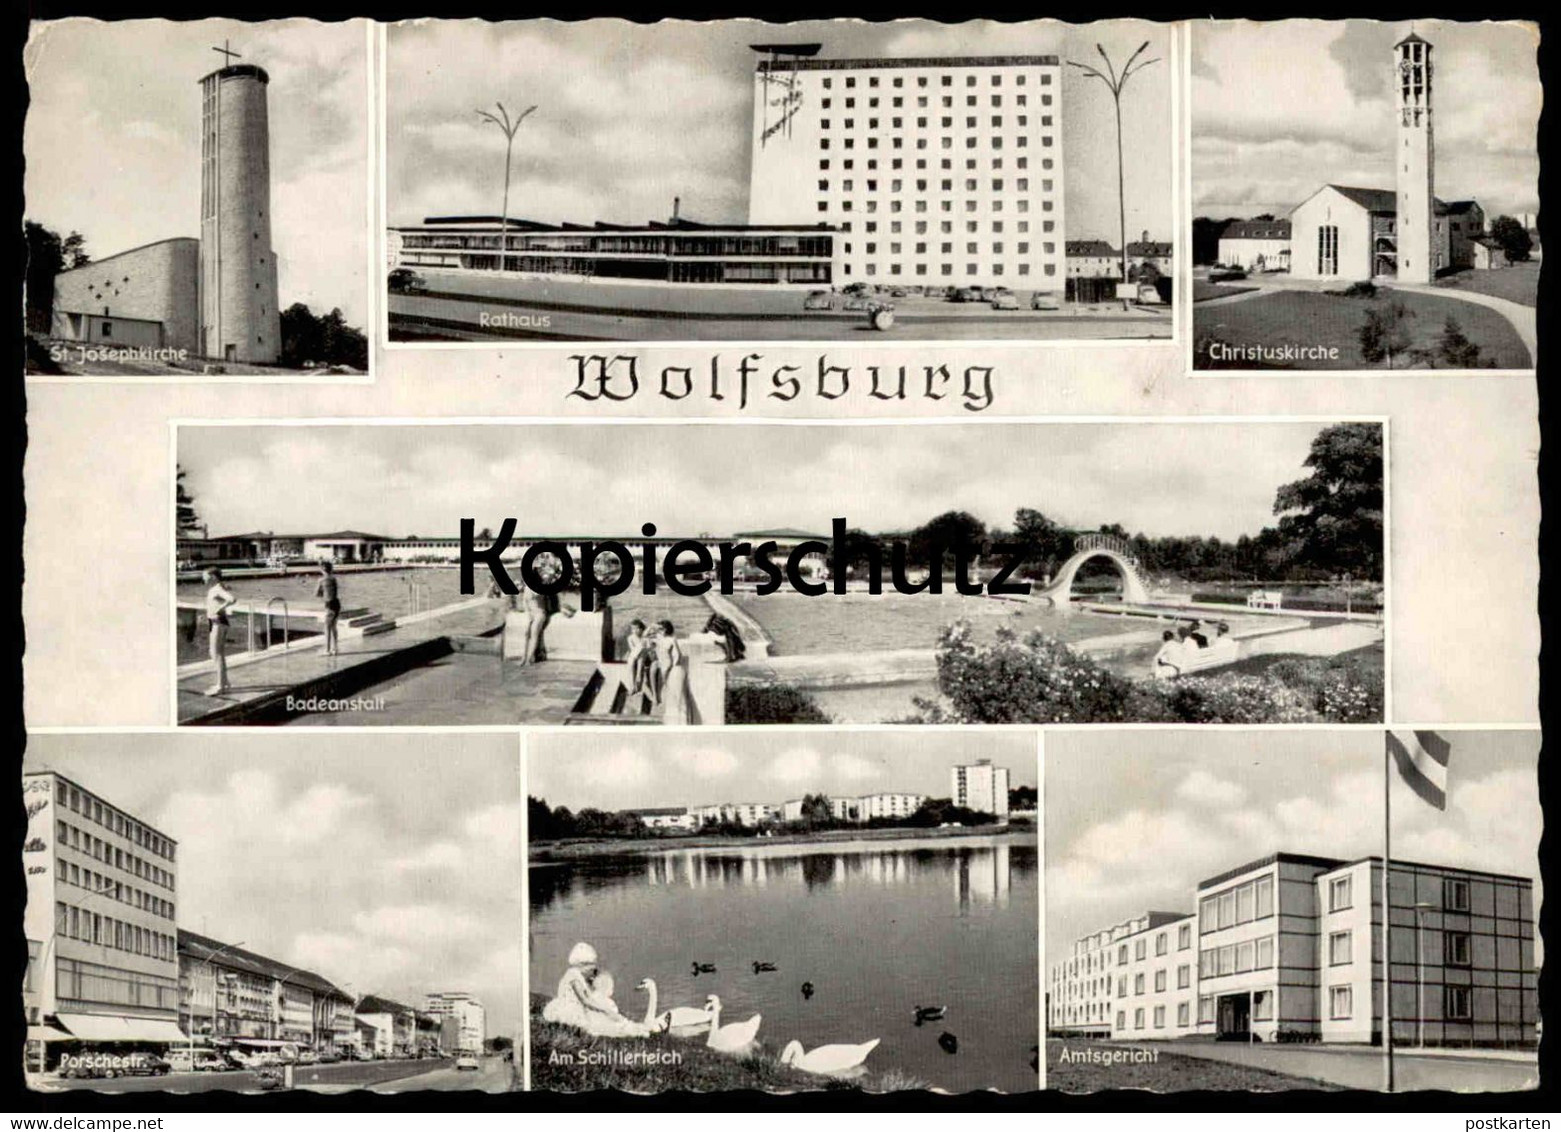 ÄLTERE POSTKARTE WOLFSBURG ST. JOSEPHSKIRCHE RATHAUS CHRISTUSKIRCHE BADEANSTALT PORSCHESTRASSE SCHILLERTEICH AMTSGERICHT - Wolfsburg